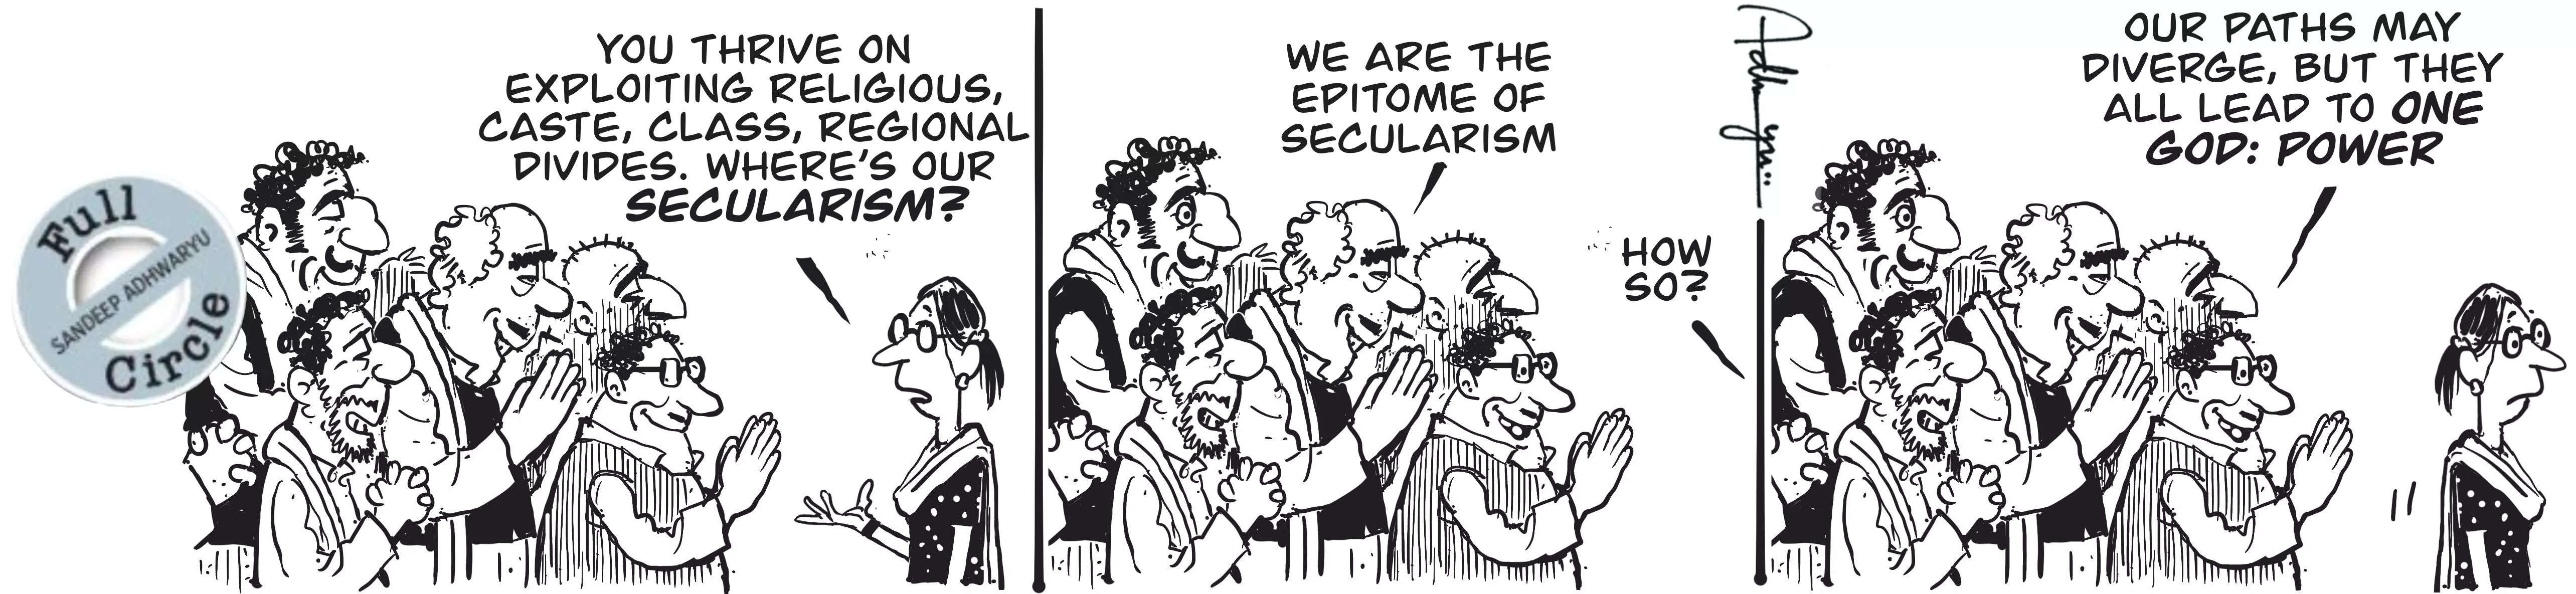 secularism